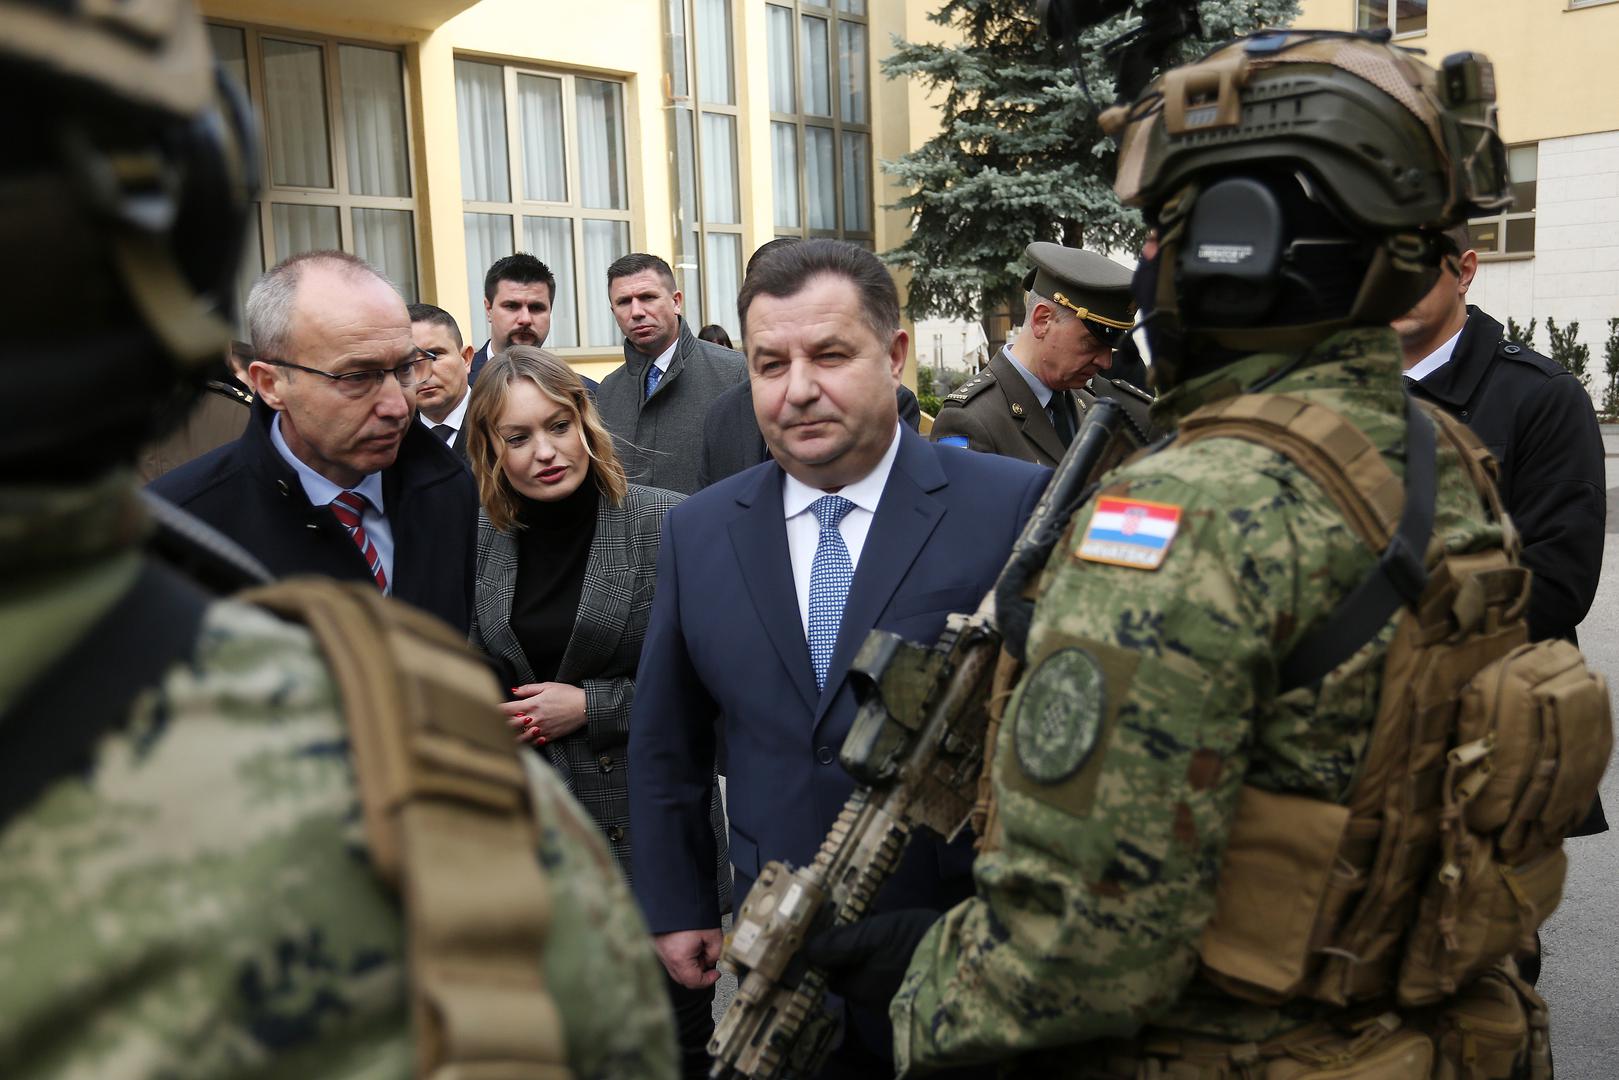 'Iskoristio sam današnju prigodu i pozvao ministra Krstičevića da posjeti Ukrajinu', rekao je na kraju ukrajinski ministar.